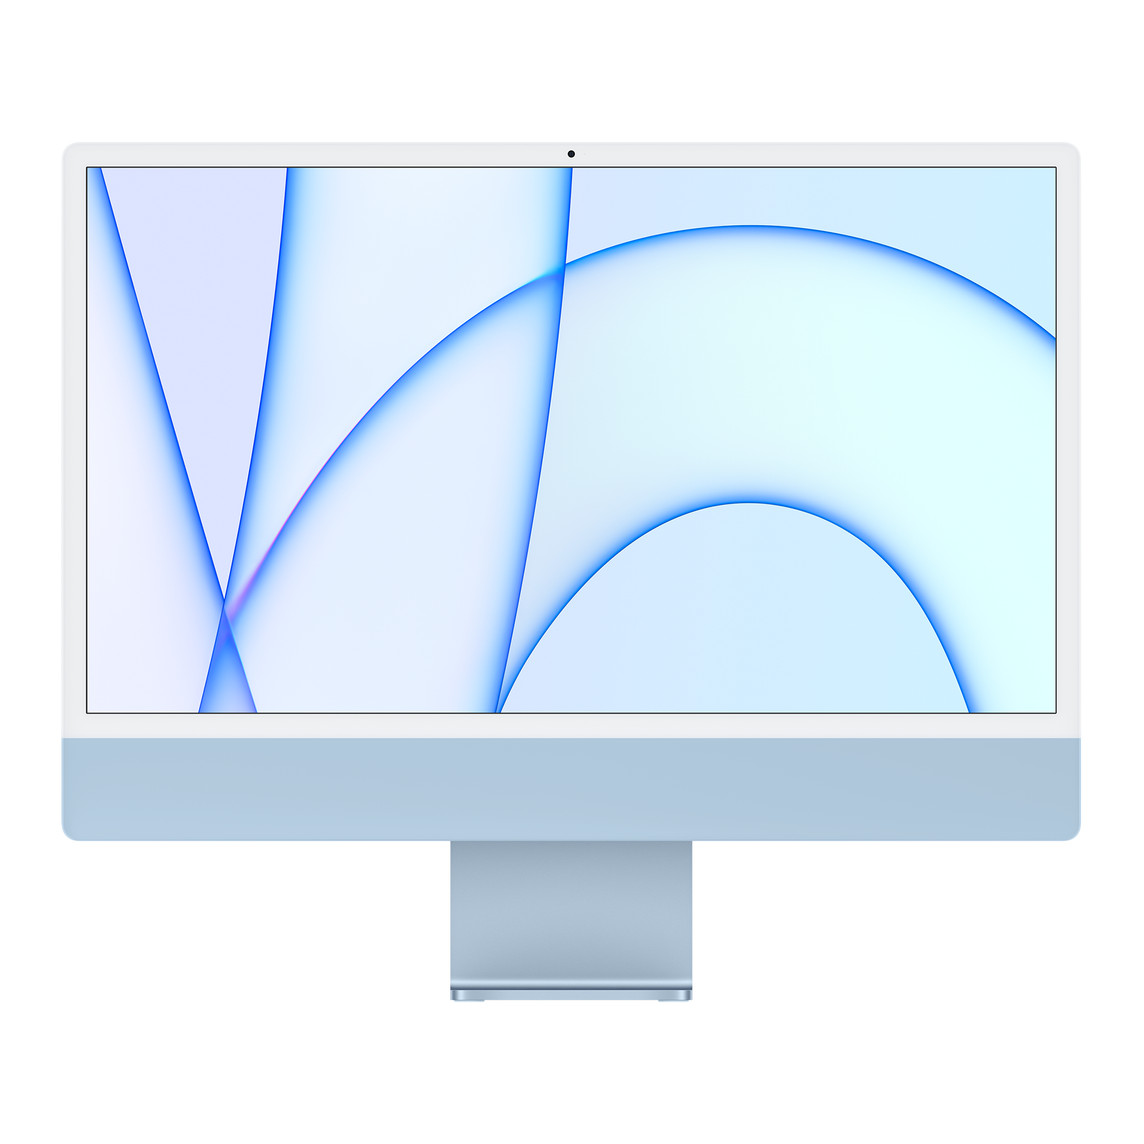 Vista frontal del exterior del iMac, que muestra el marco blanco de la pantalla, el exterior y el soporte de aluminio en azul